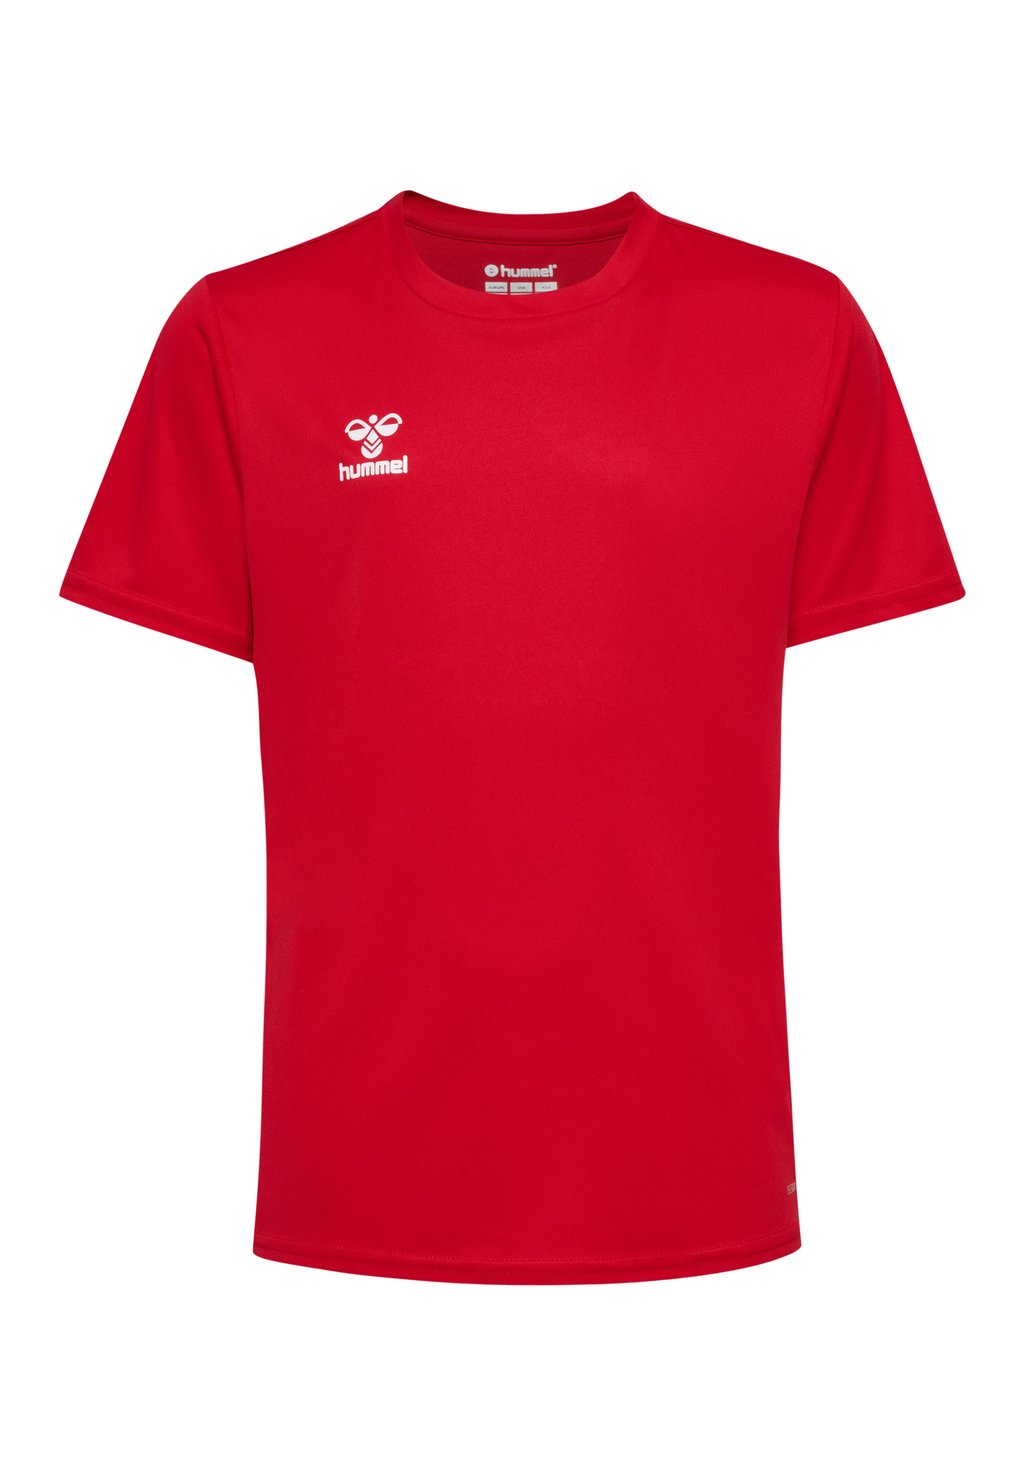 Футболка базовая ESSENTIAL SS Hummel, цвет true red футболка базовая essential ss hummel цвет white